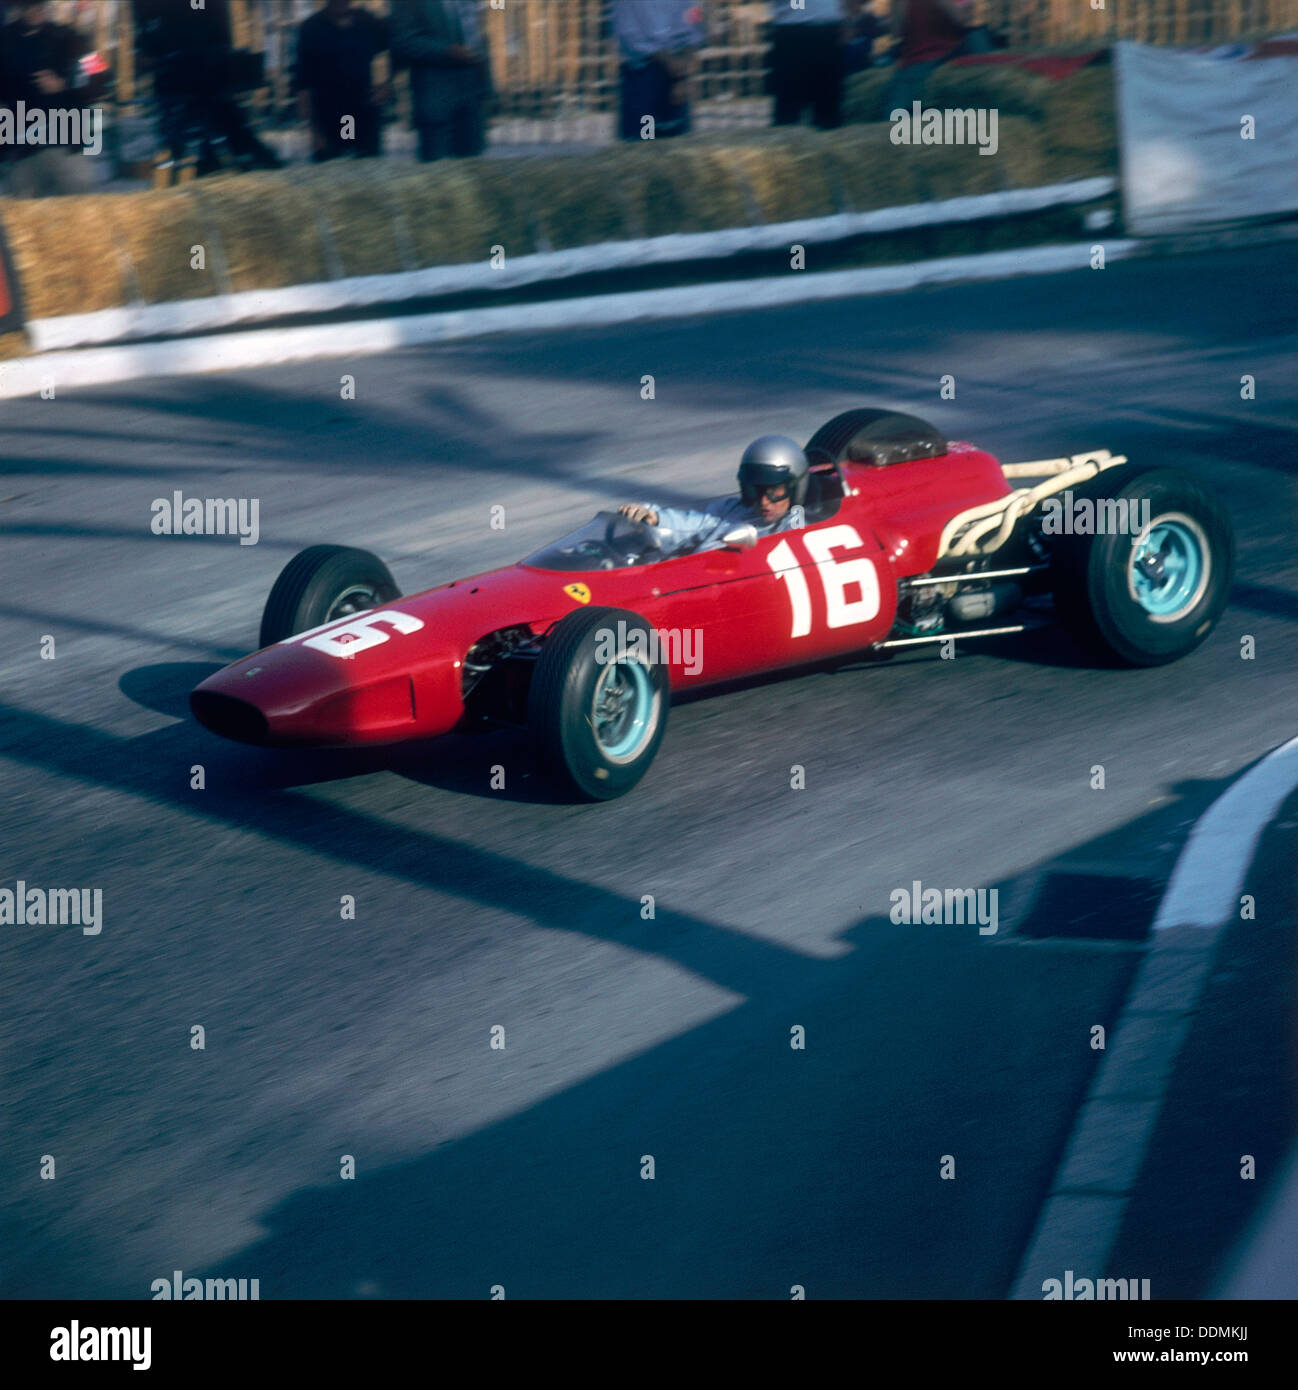 Lorenzo Bandini driving a Ferrari 246, in the Monaco Grand Prix, Monte Carlo, 1966. Artist: Unknown Stock Photo